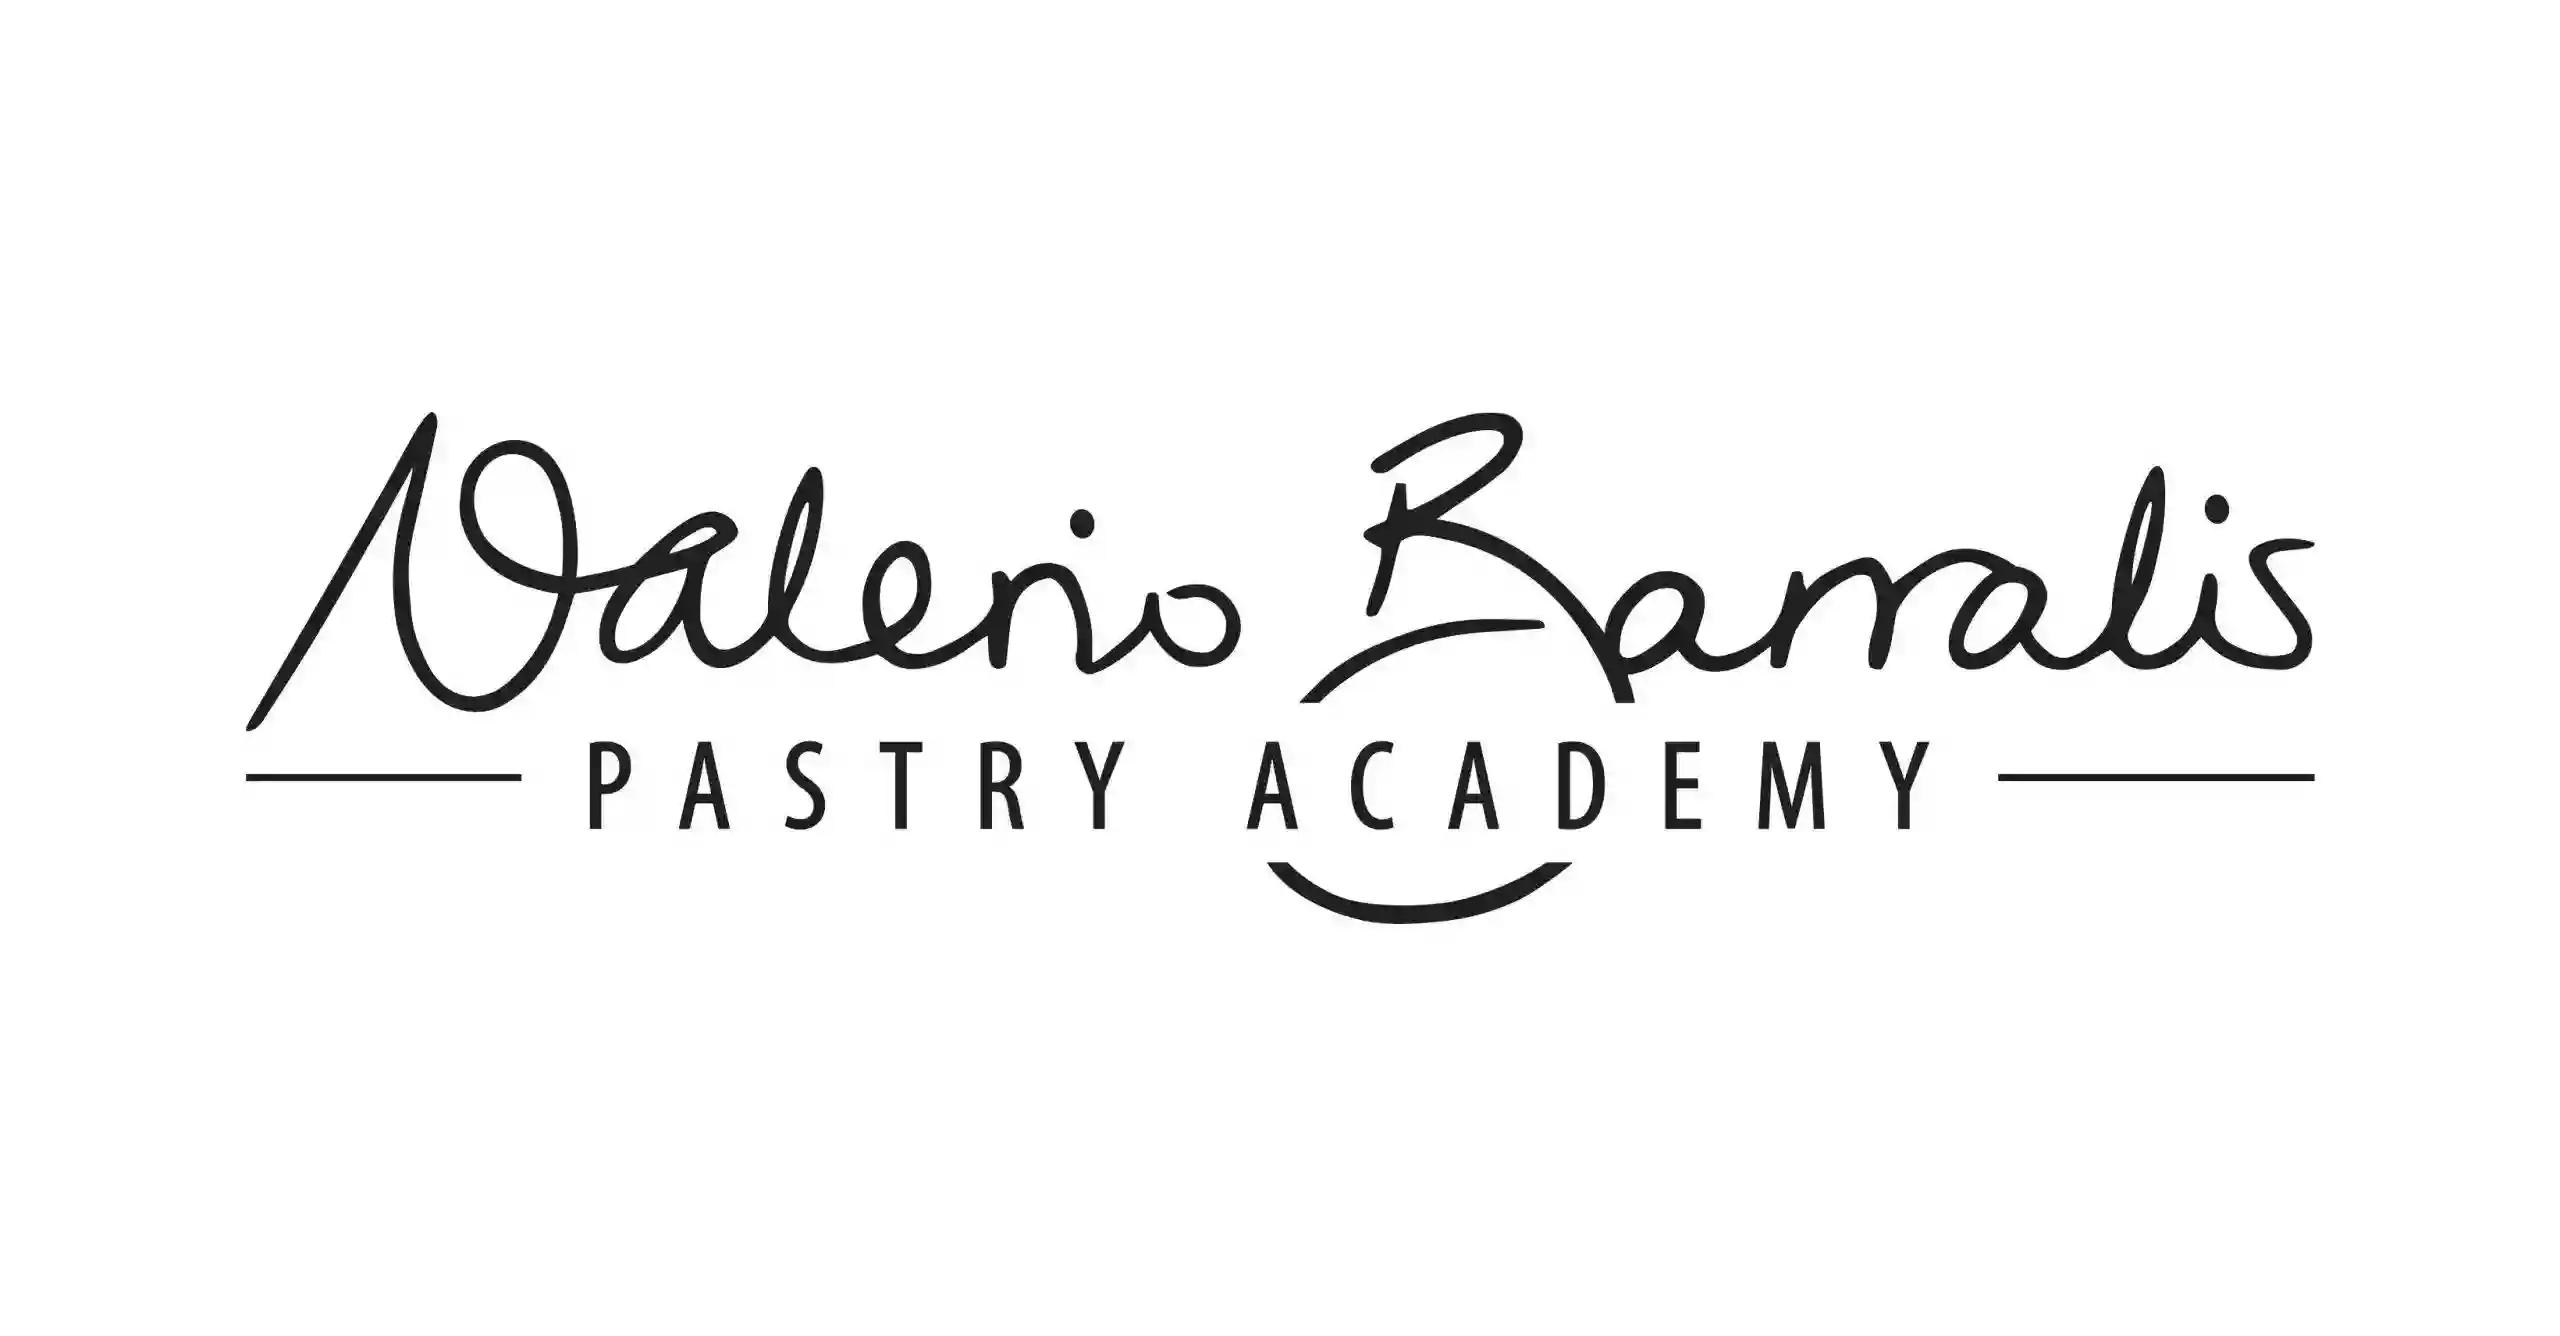 Valerio Barralis Pastry Academy